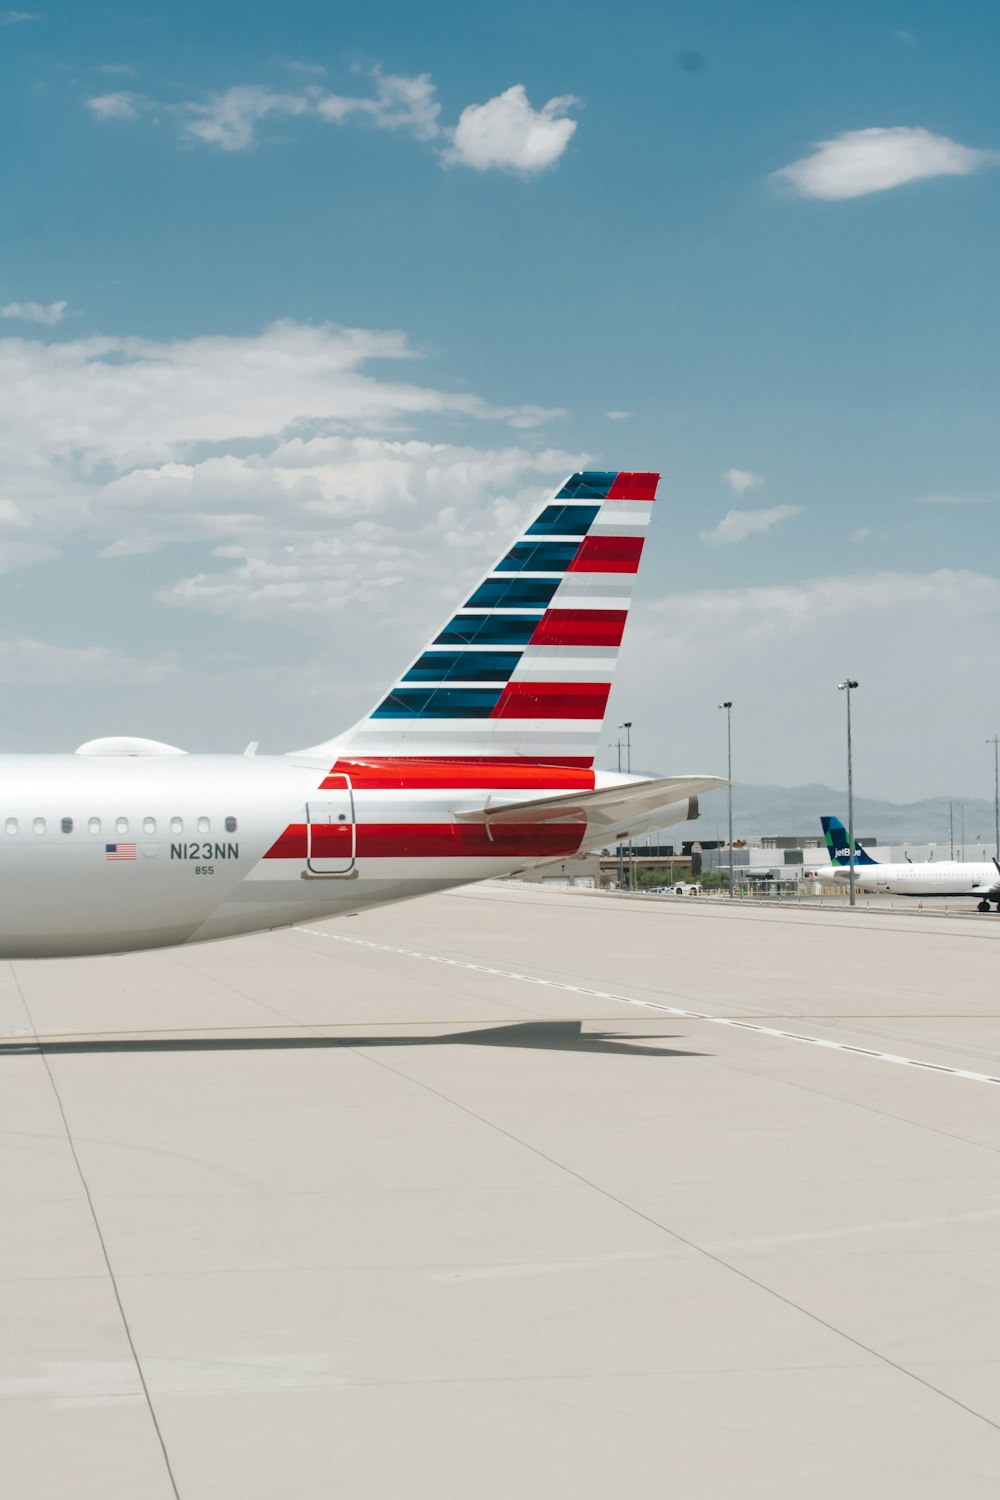 aereo passeggeri bianco e rosso sull'aeroporto durante il giorno